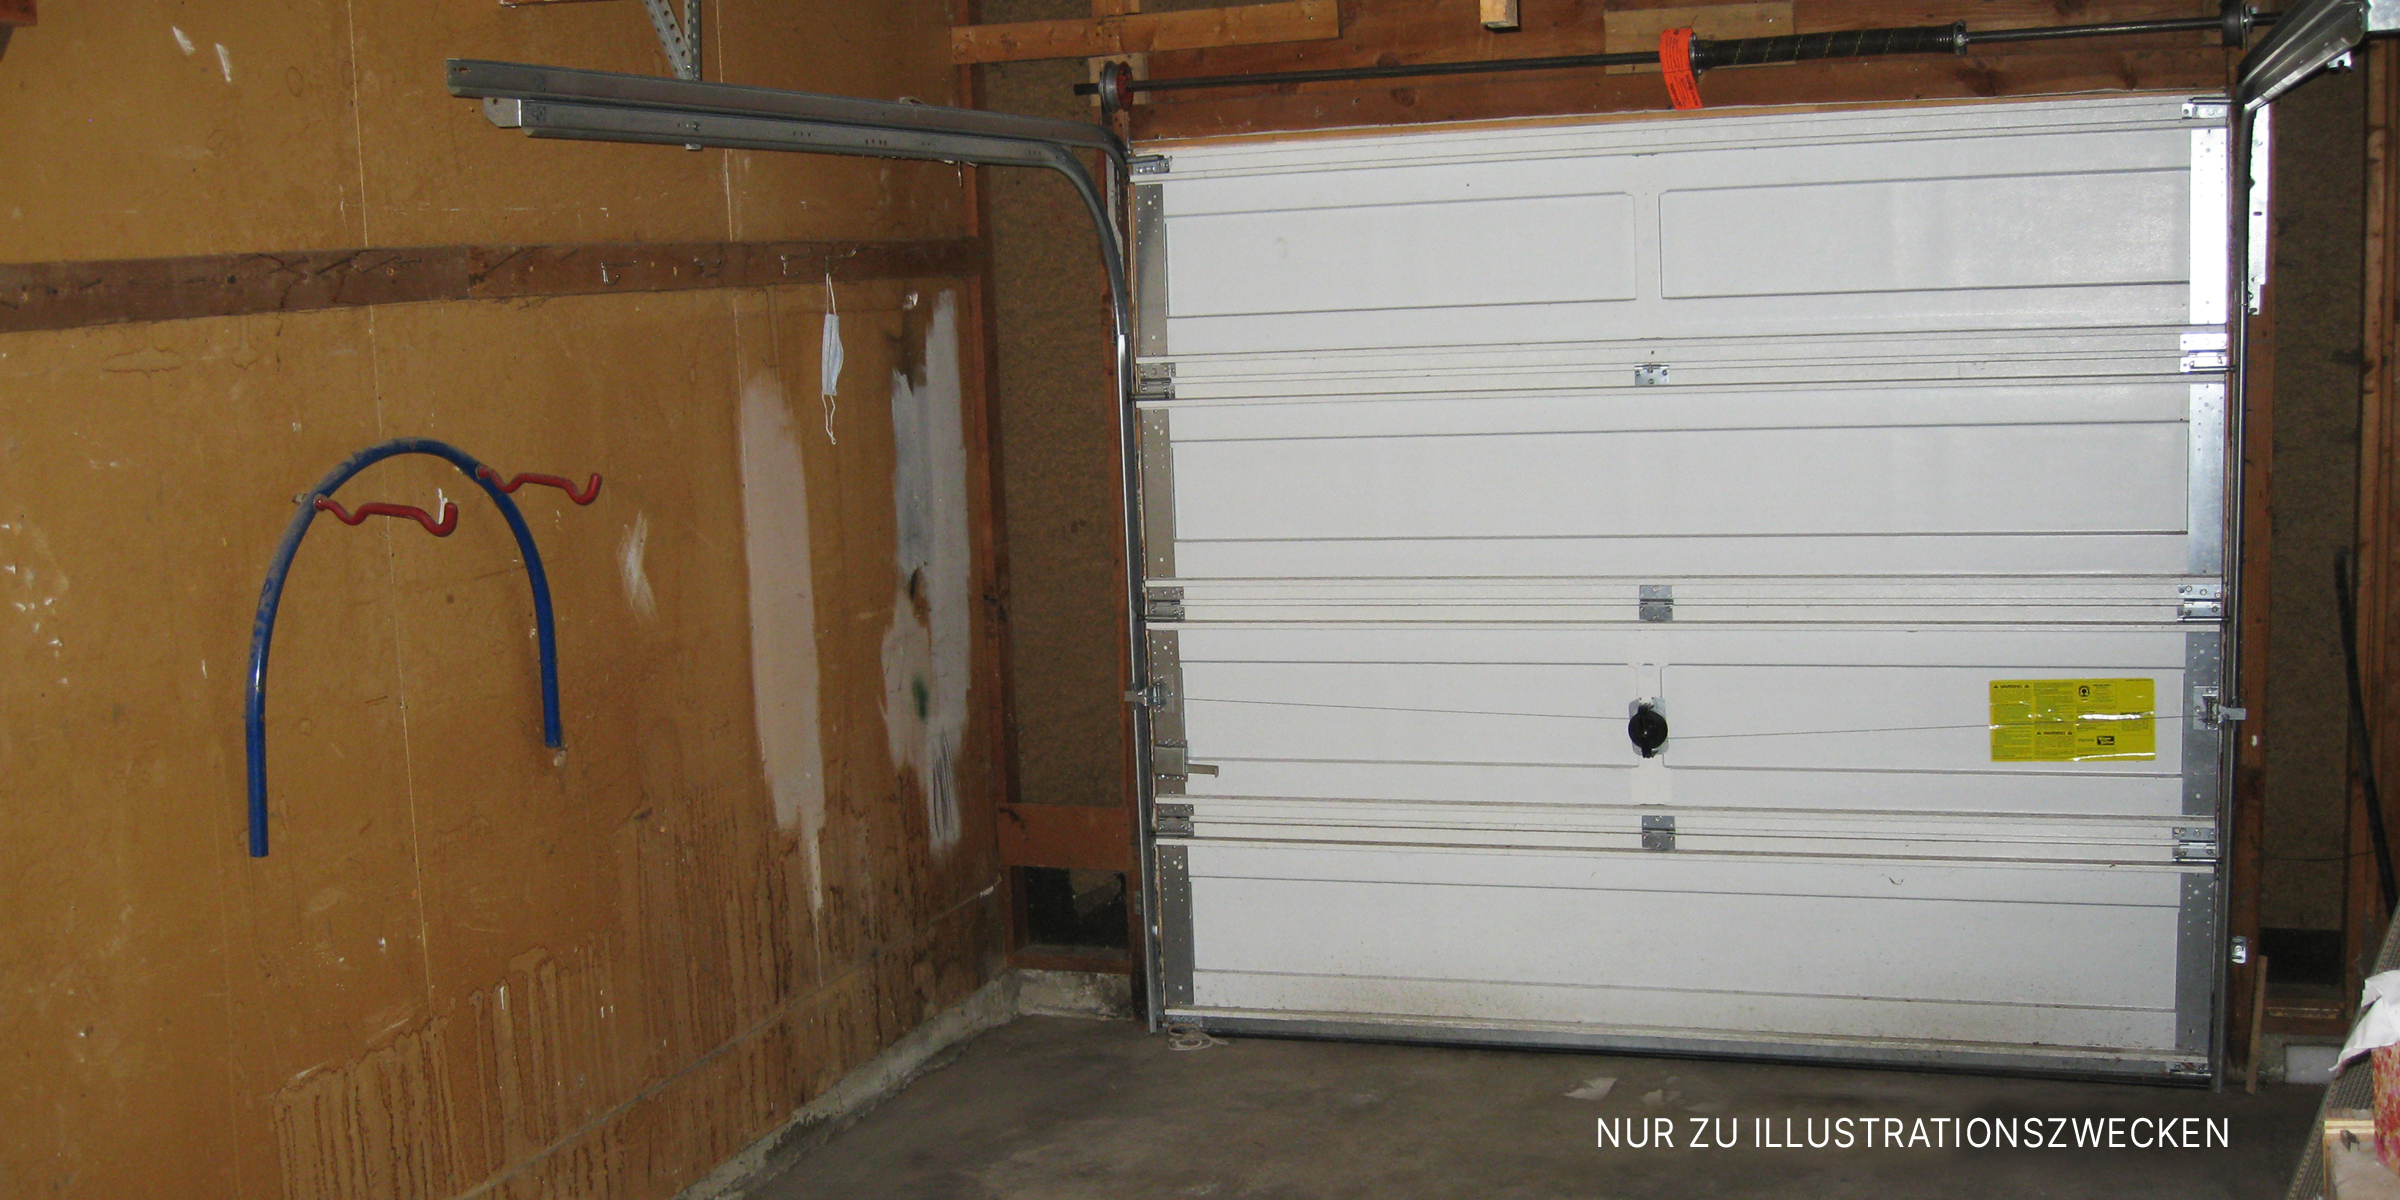 Eine verschlossene Garage. | Quelle: Flickr/micahb37 (CC BY-SA 2.0)